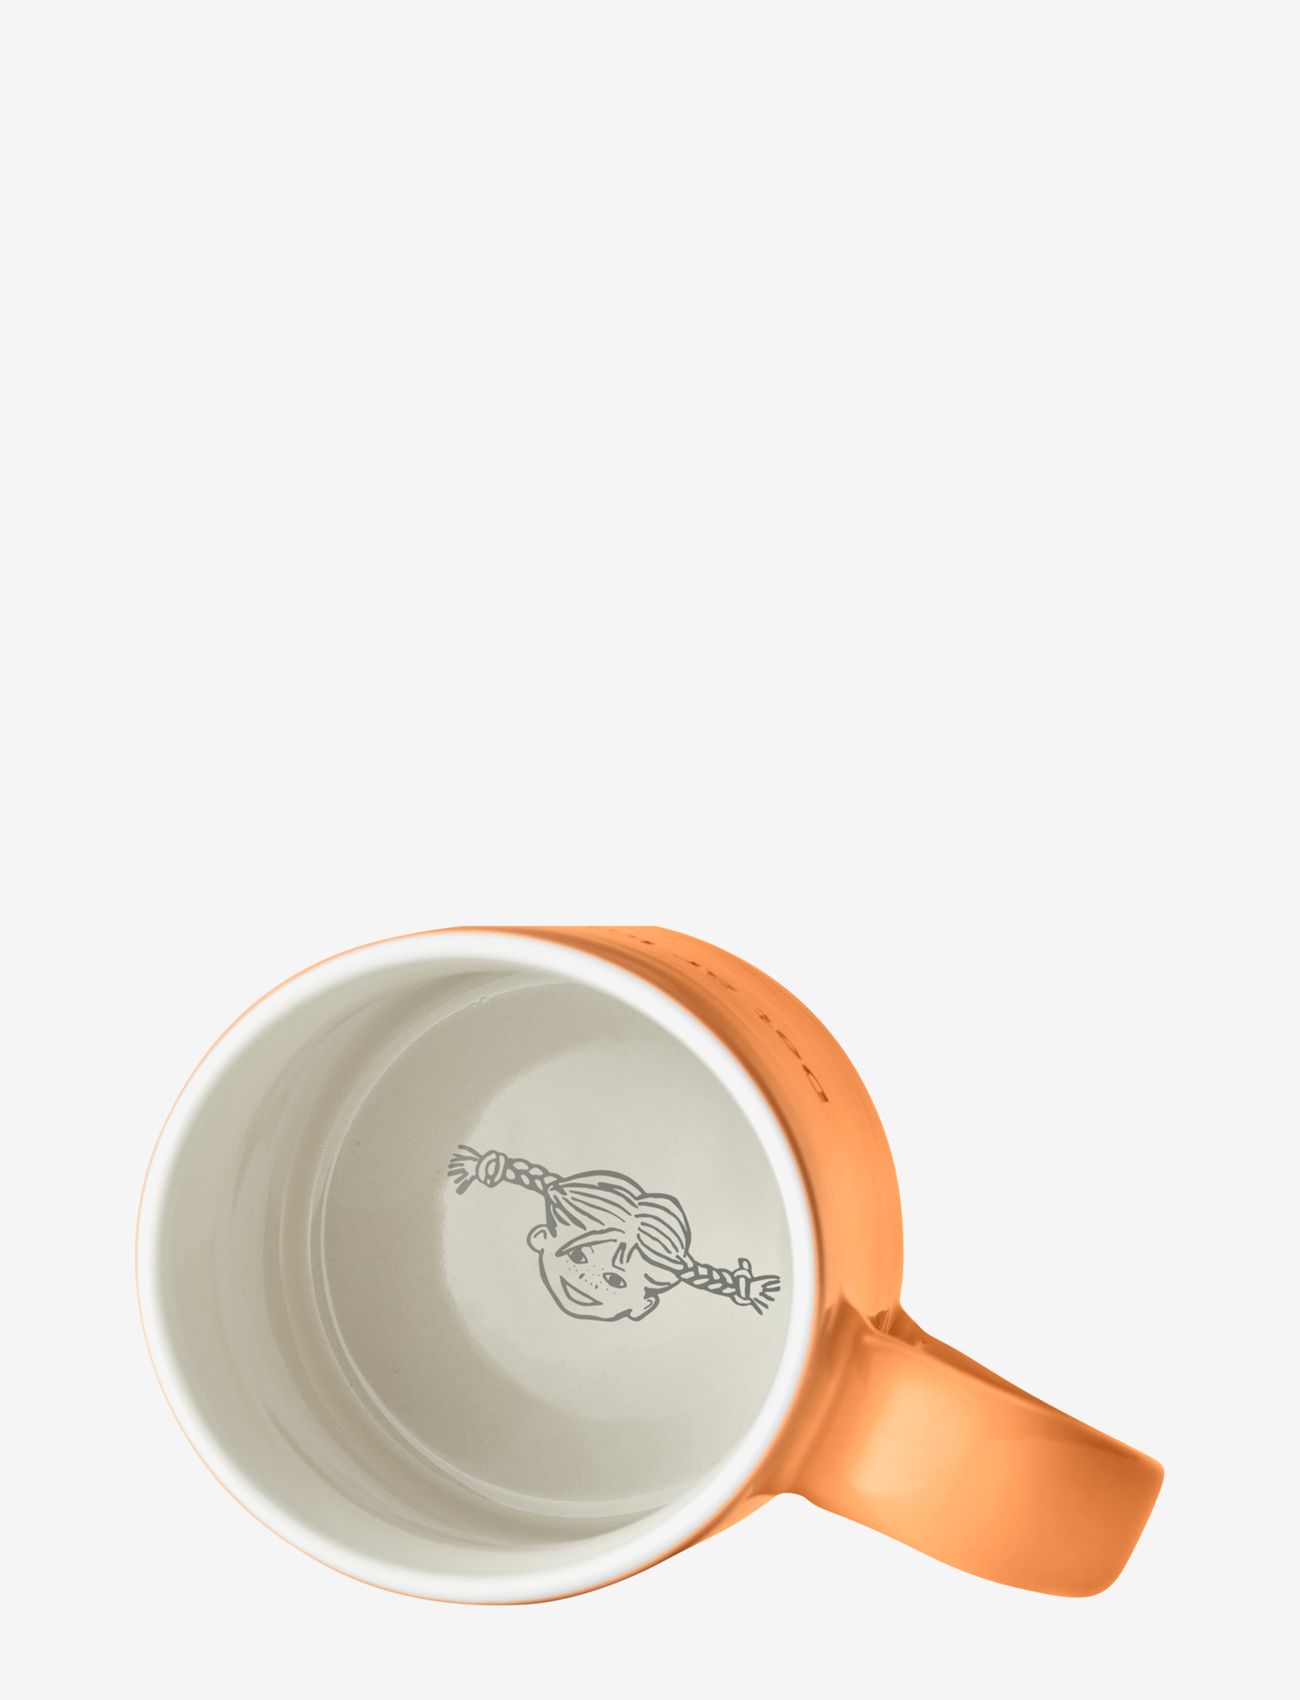 Design House Stockholm - Astrid Lindgren mug - lowest prices - orange - 1